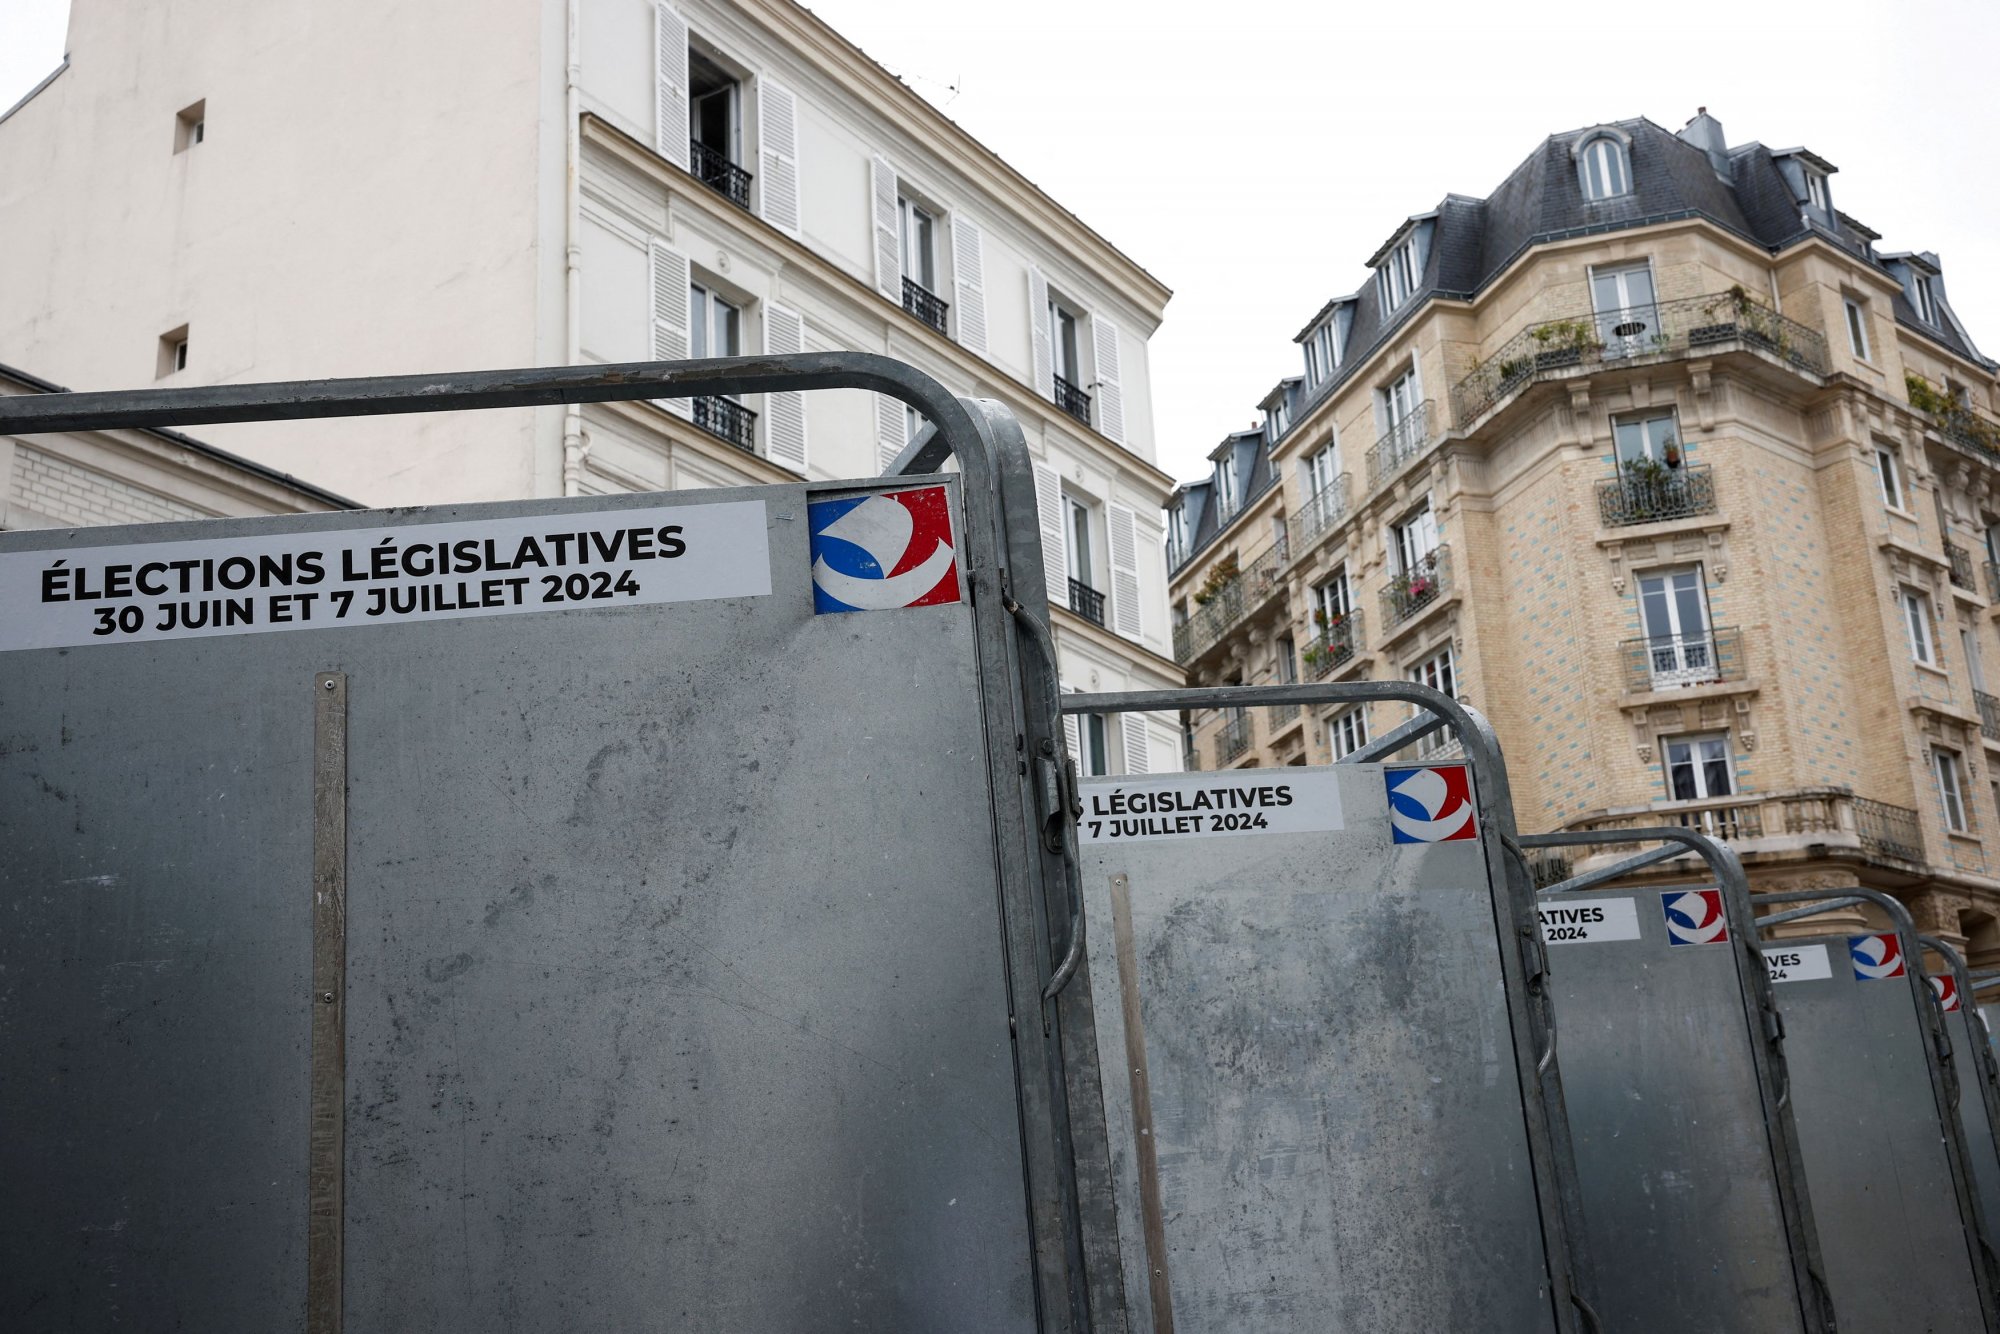 Εκλογές Γαλλία: Οι πιο πολωμένες κάλπες στην ιστορία της